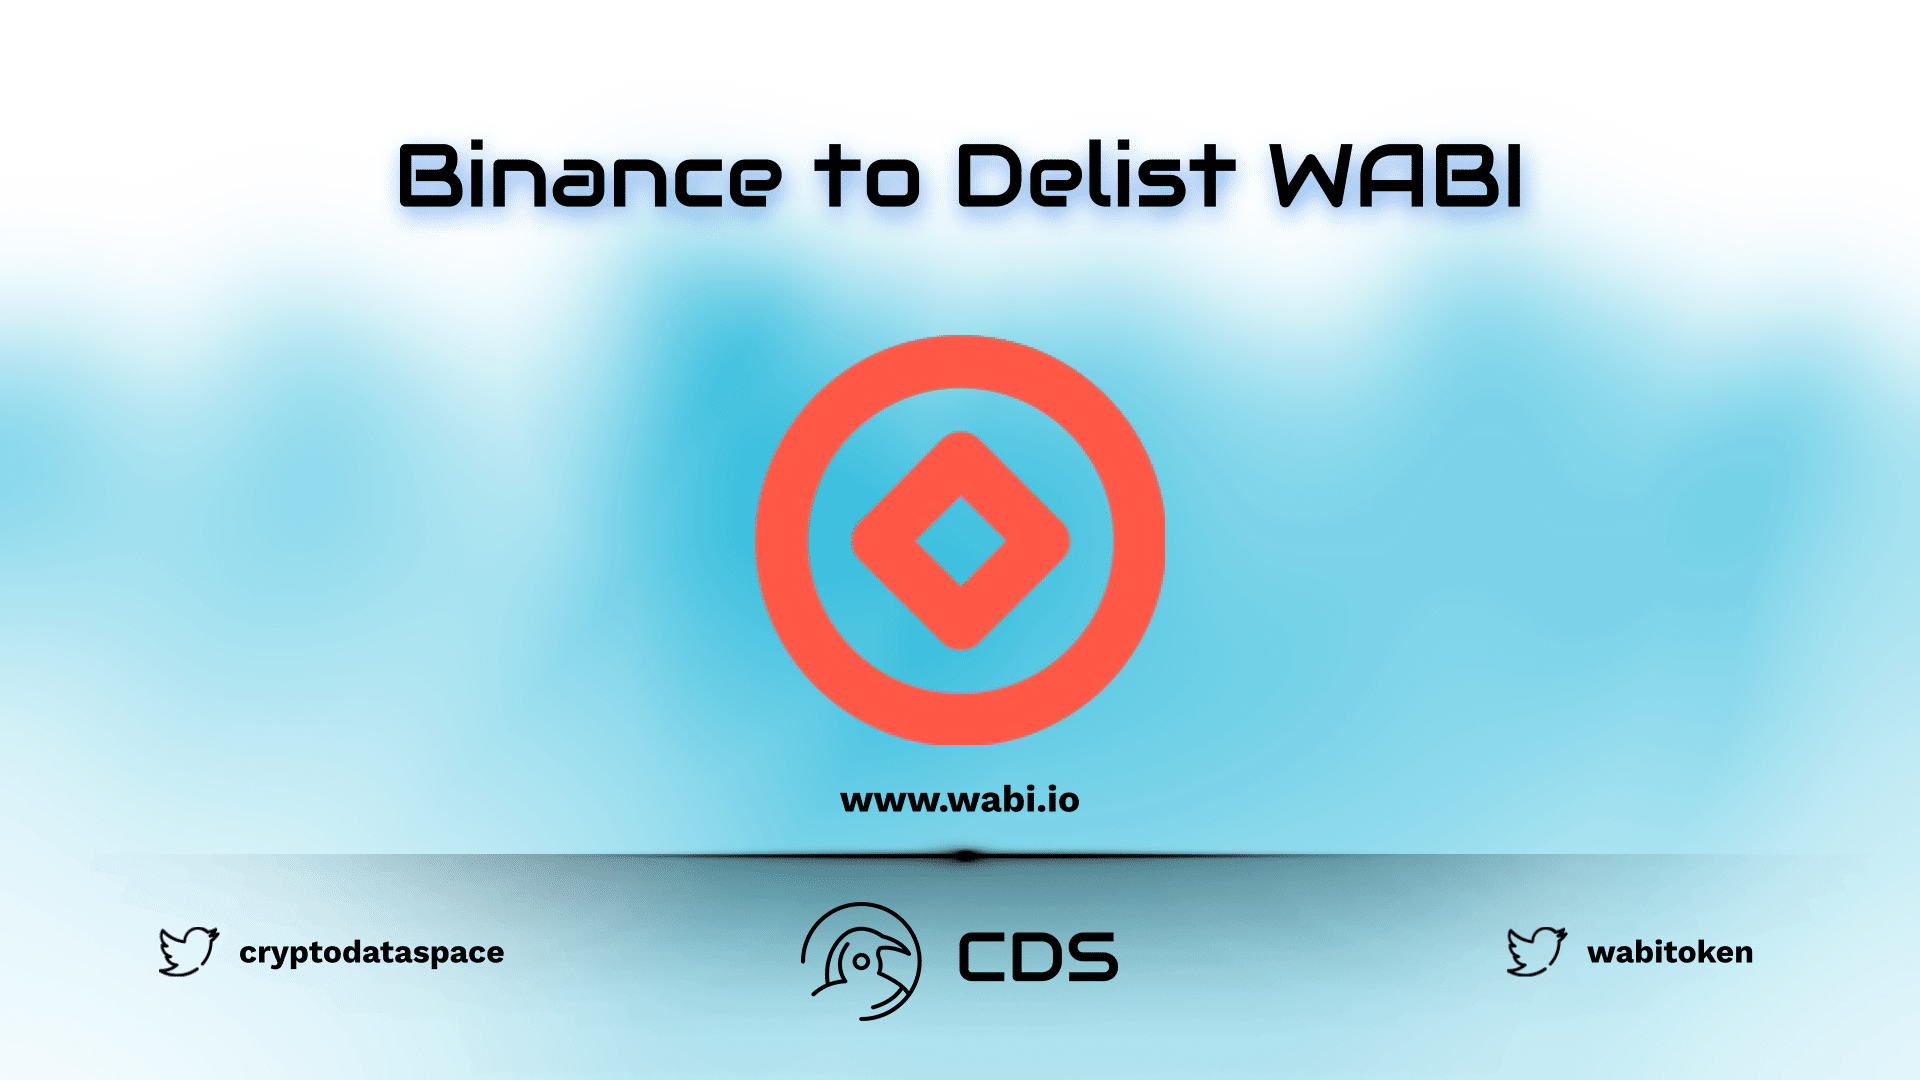 Binance to Delist WABI